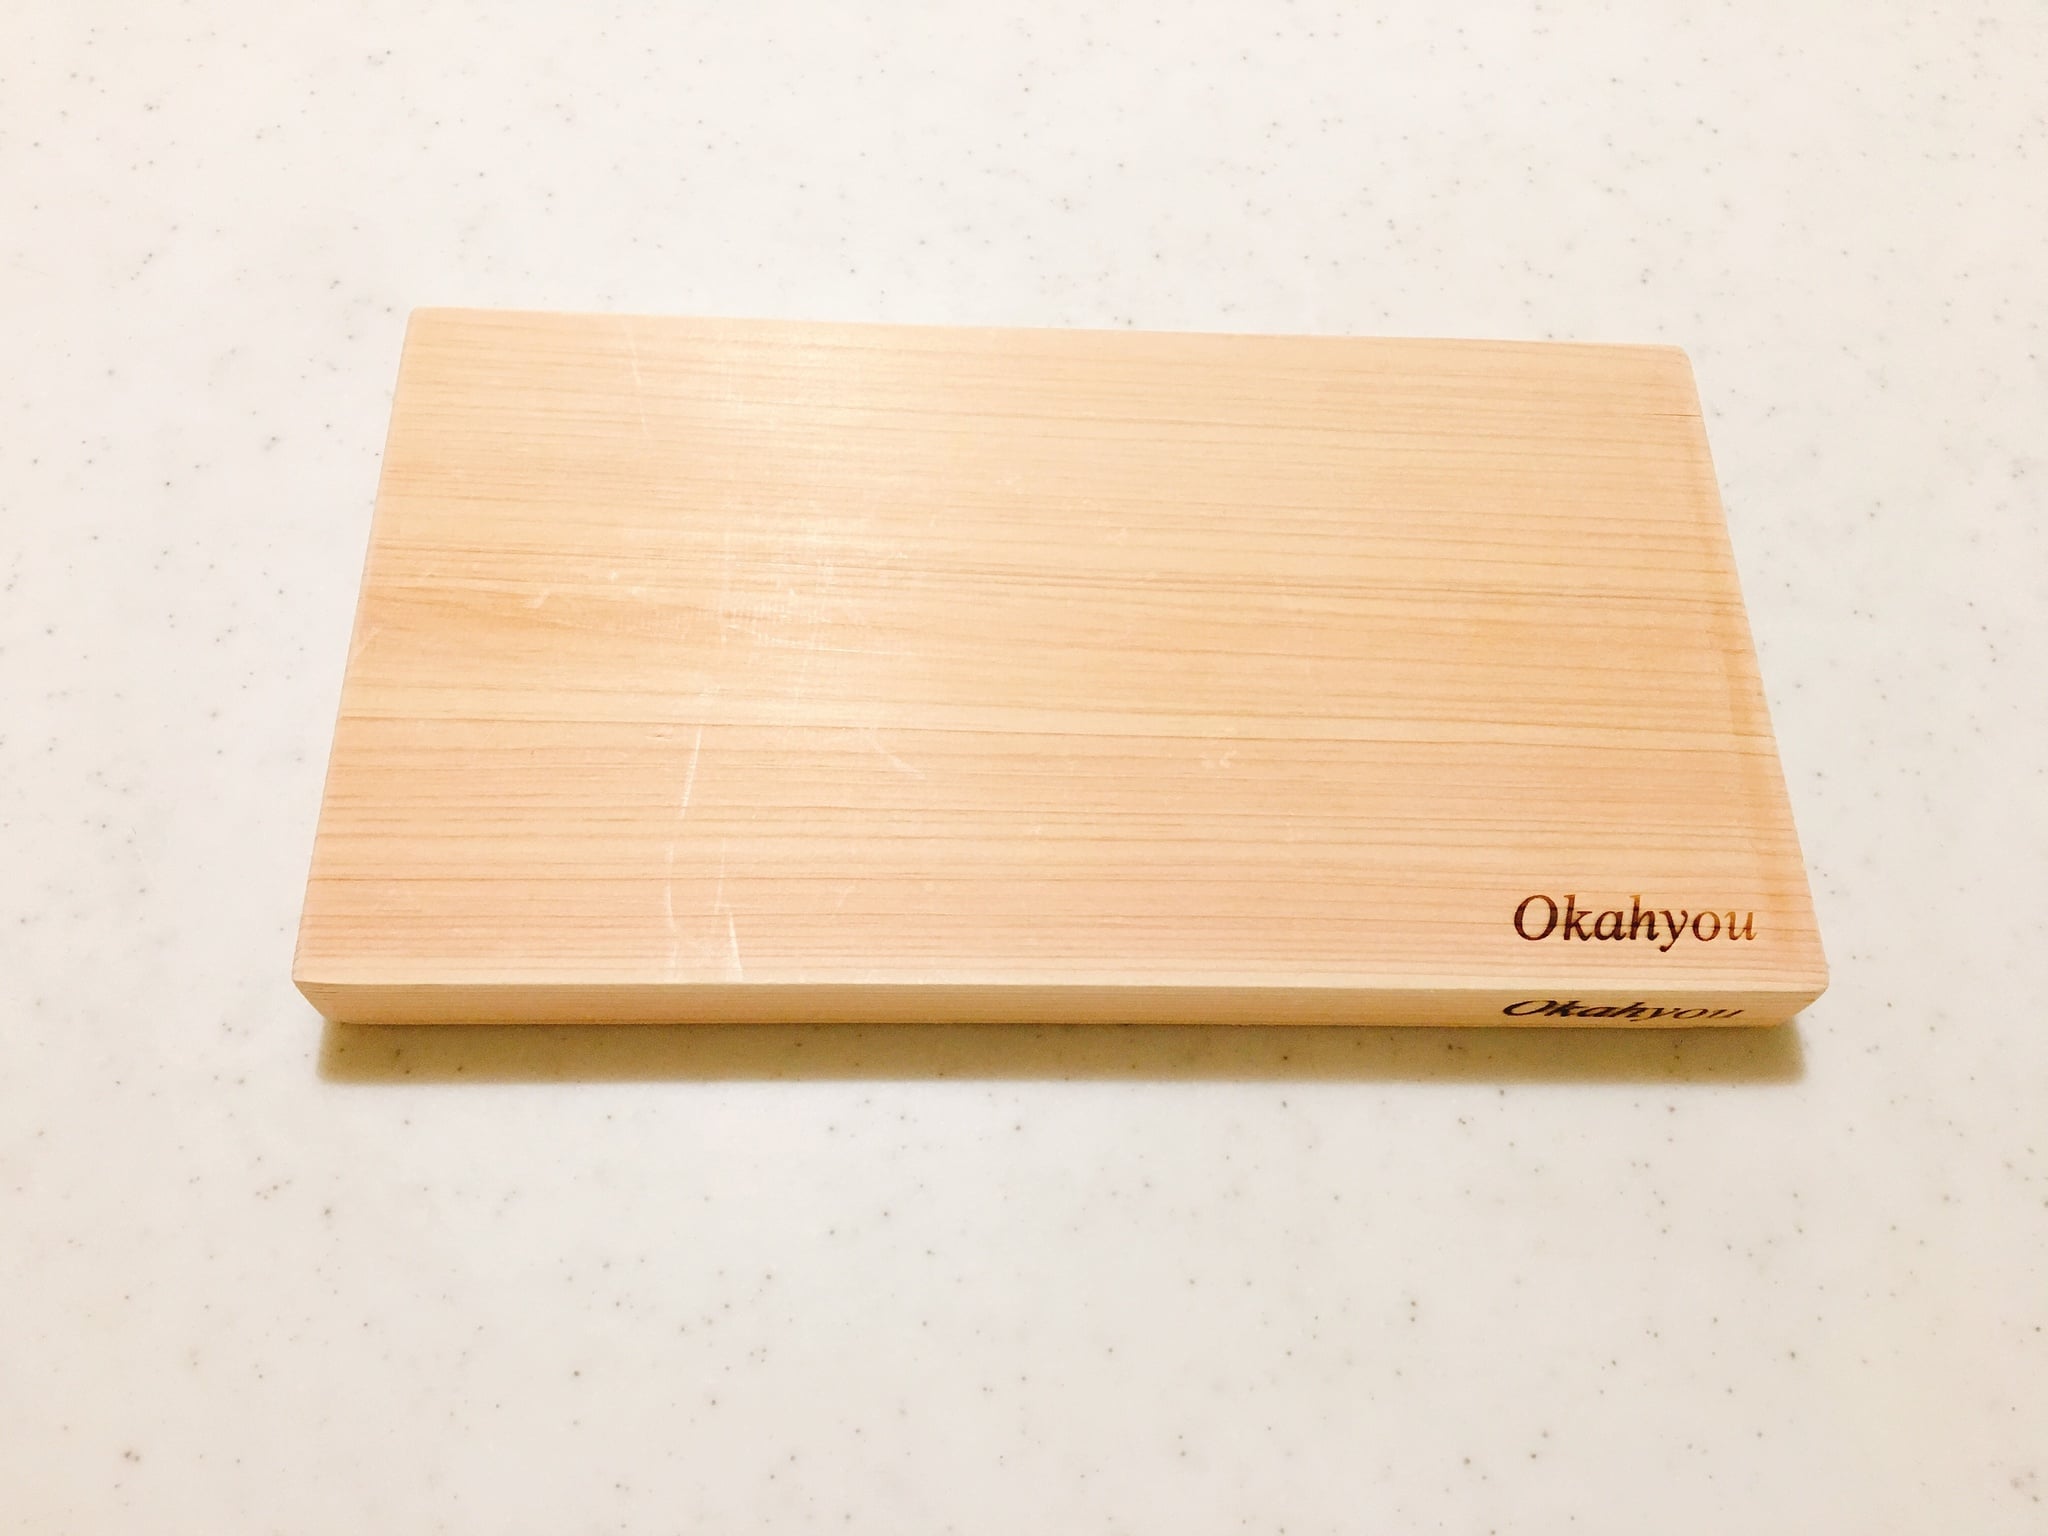 木製まな板をはじめ木材加工品をお探しの方